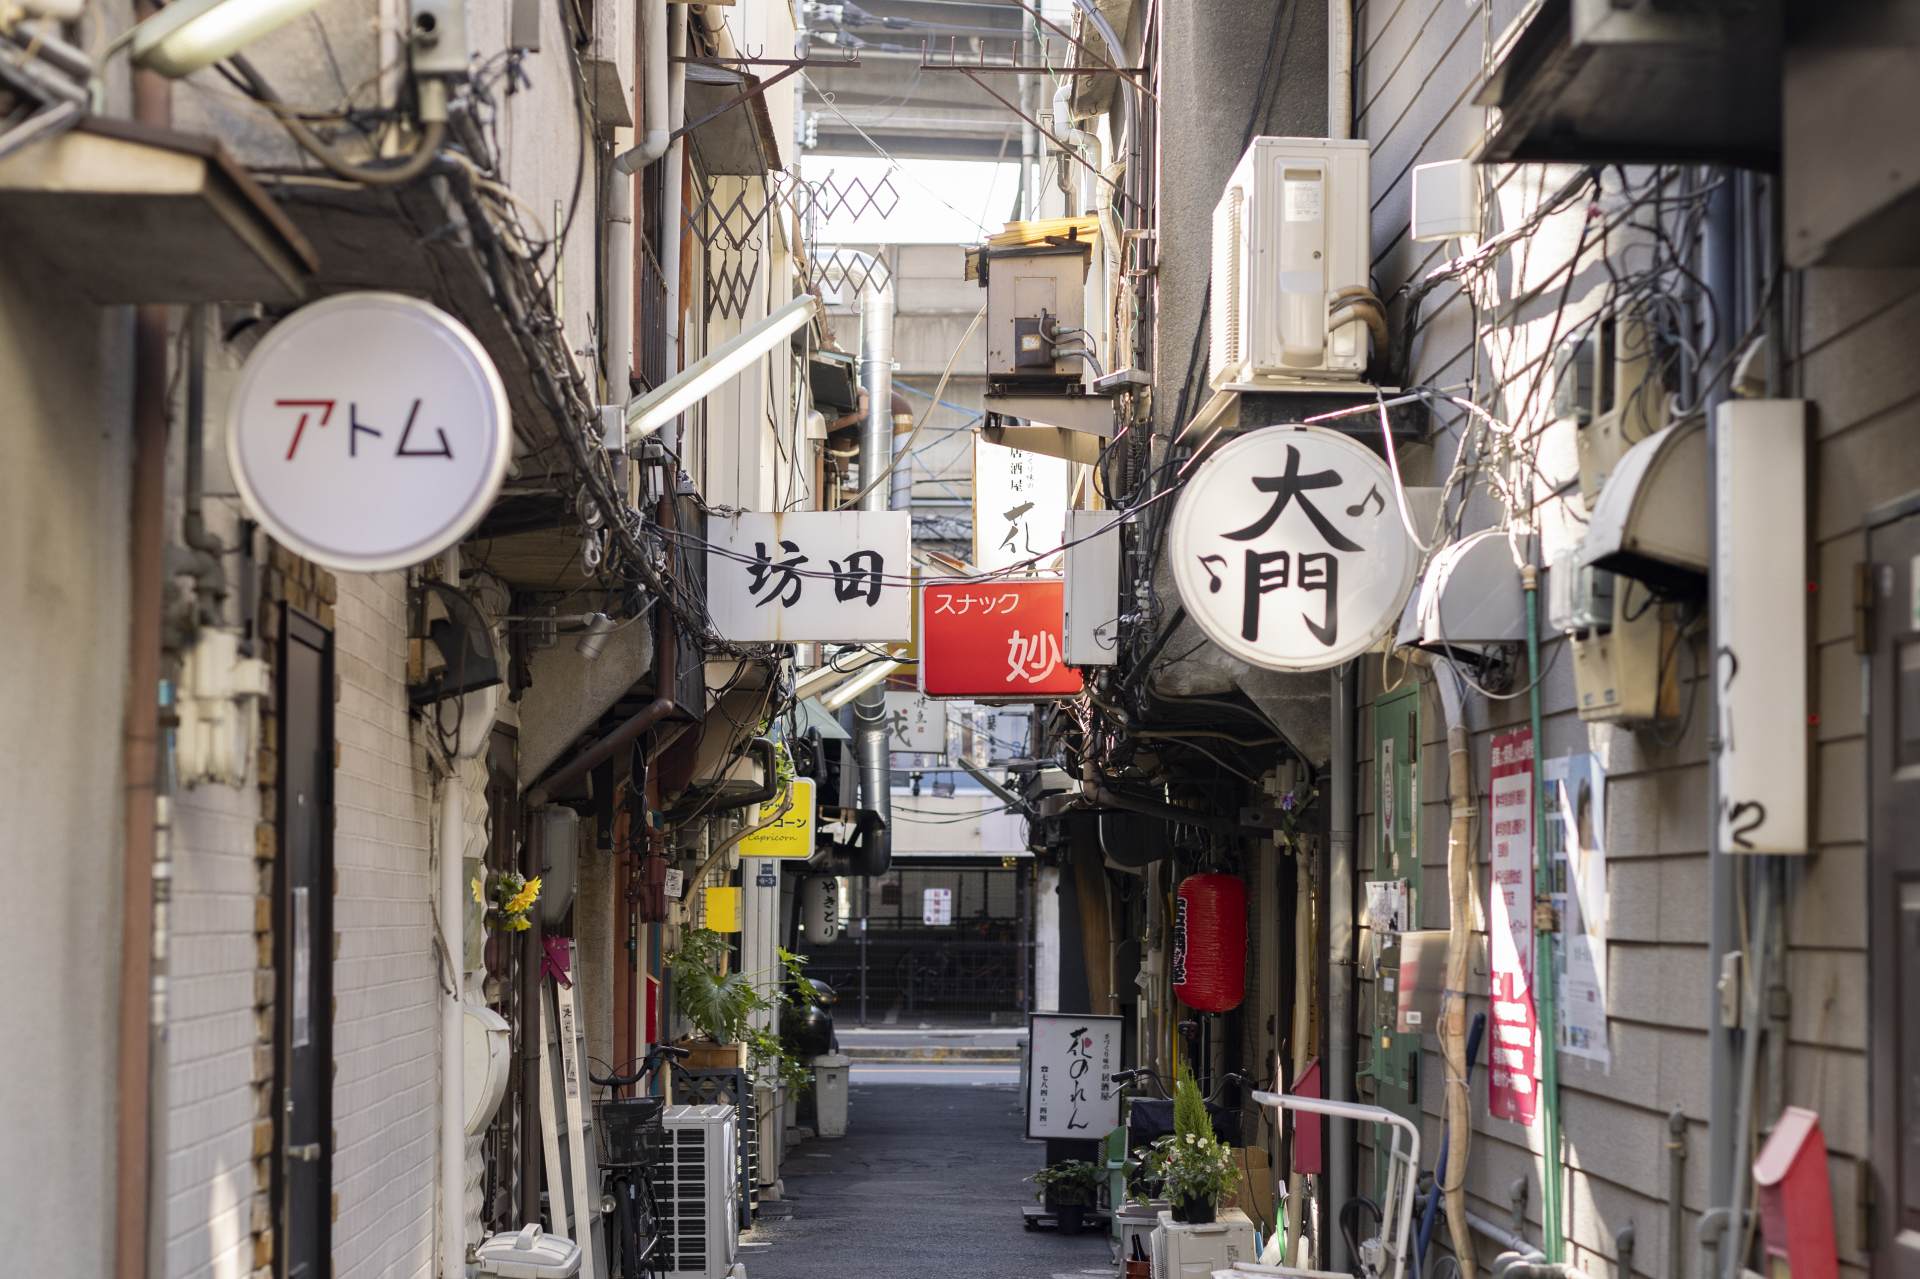 レトロなバーが軒を連ねる路地。これらは日本のナイトライフの魅力であり、未来に残したいものだ。